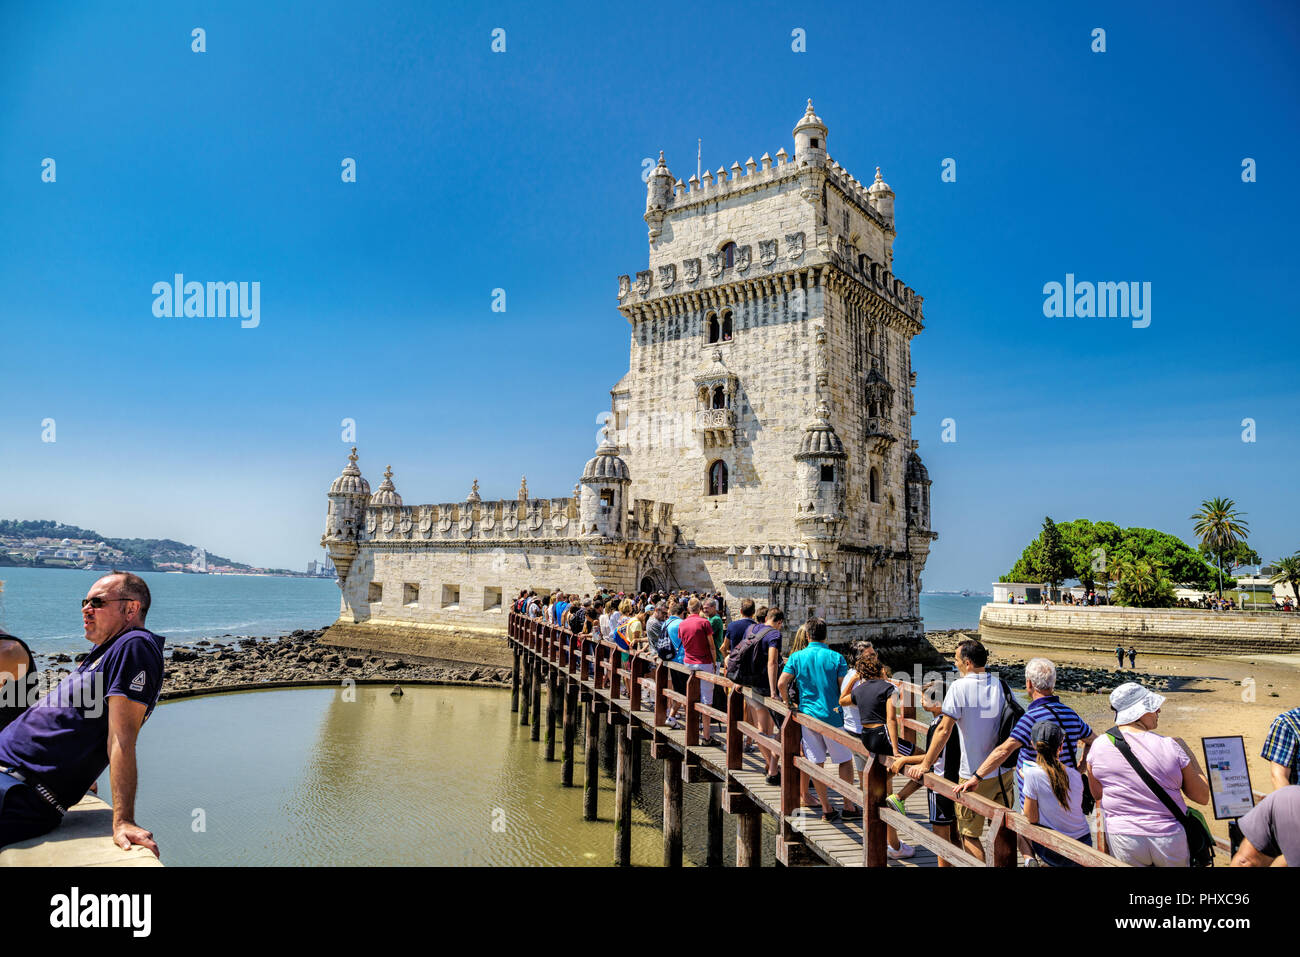 Die Menschen in der Schlange der Torre de Belém eingeben. Torre de Belem ist ein wehrturm am Anfang des XVII Jahrhunderts gebaut. Stockfoto